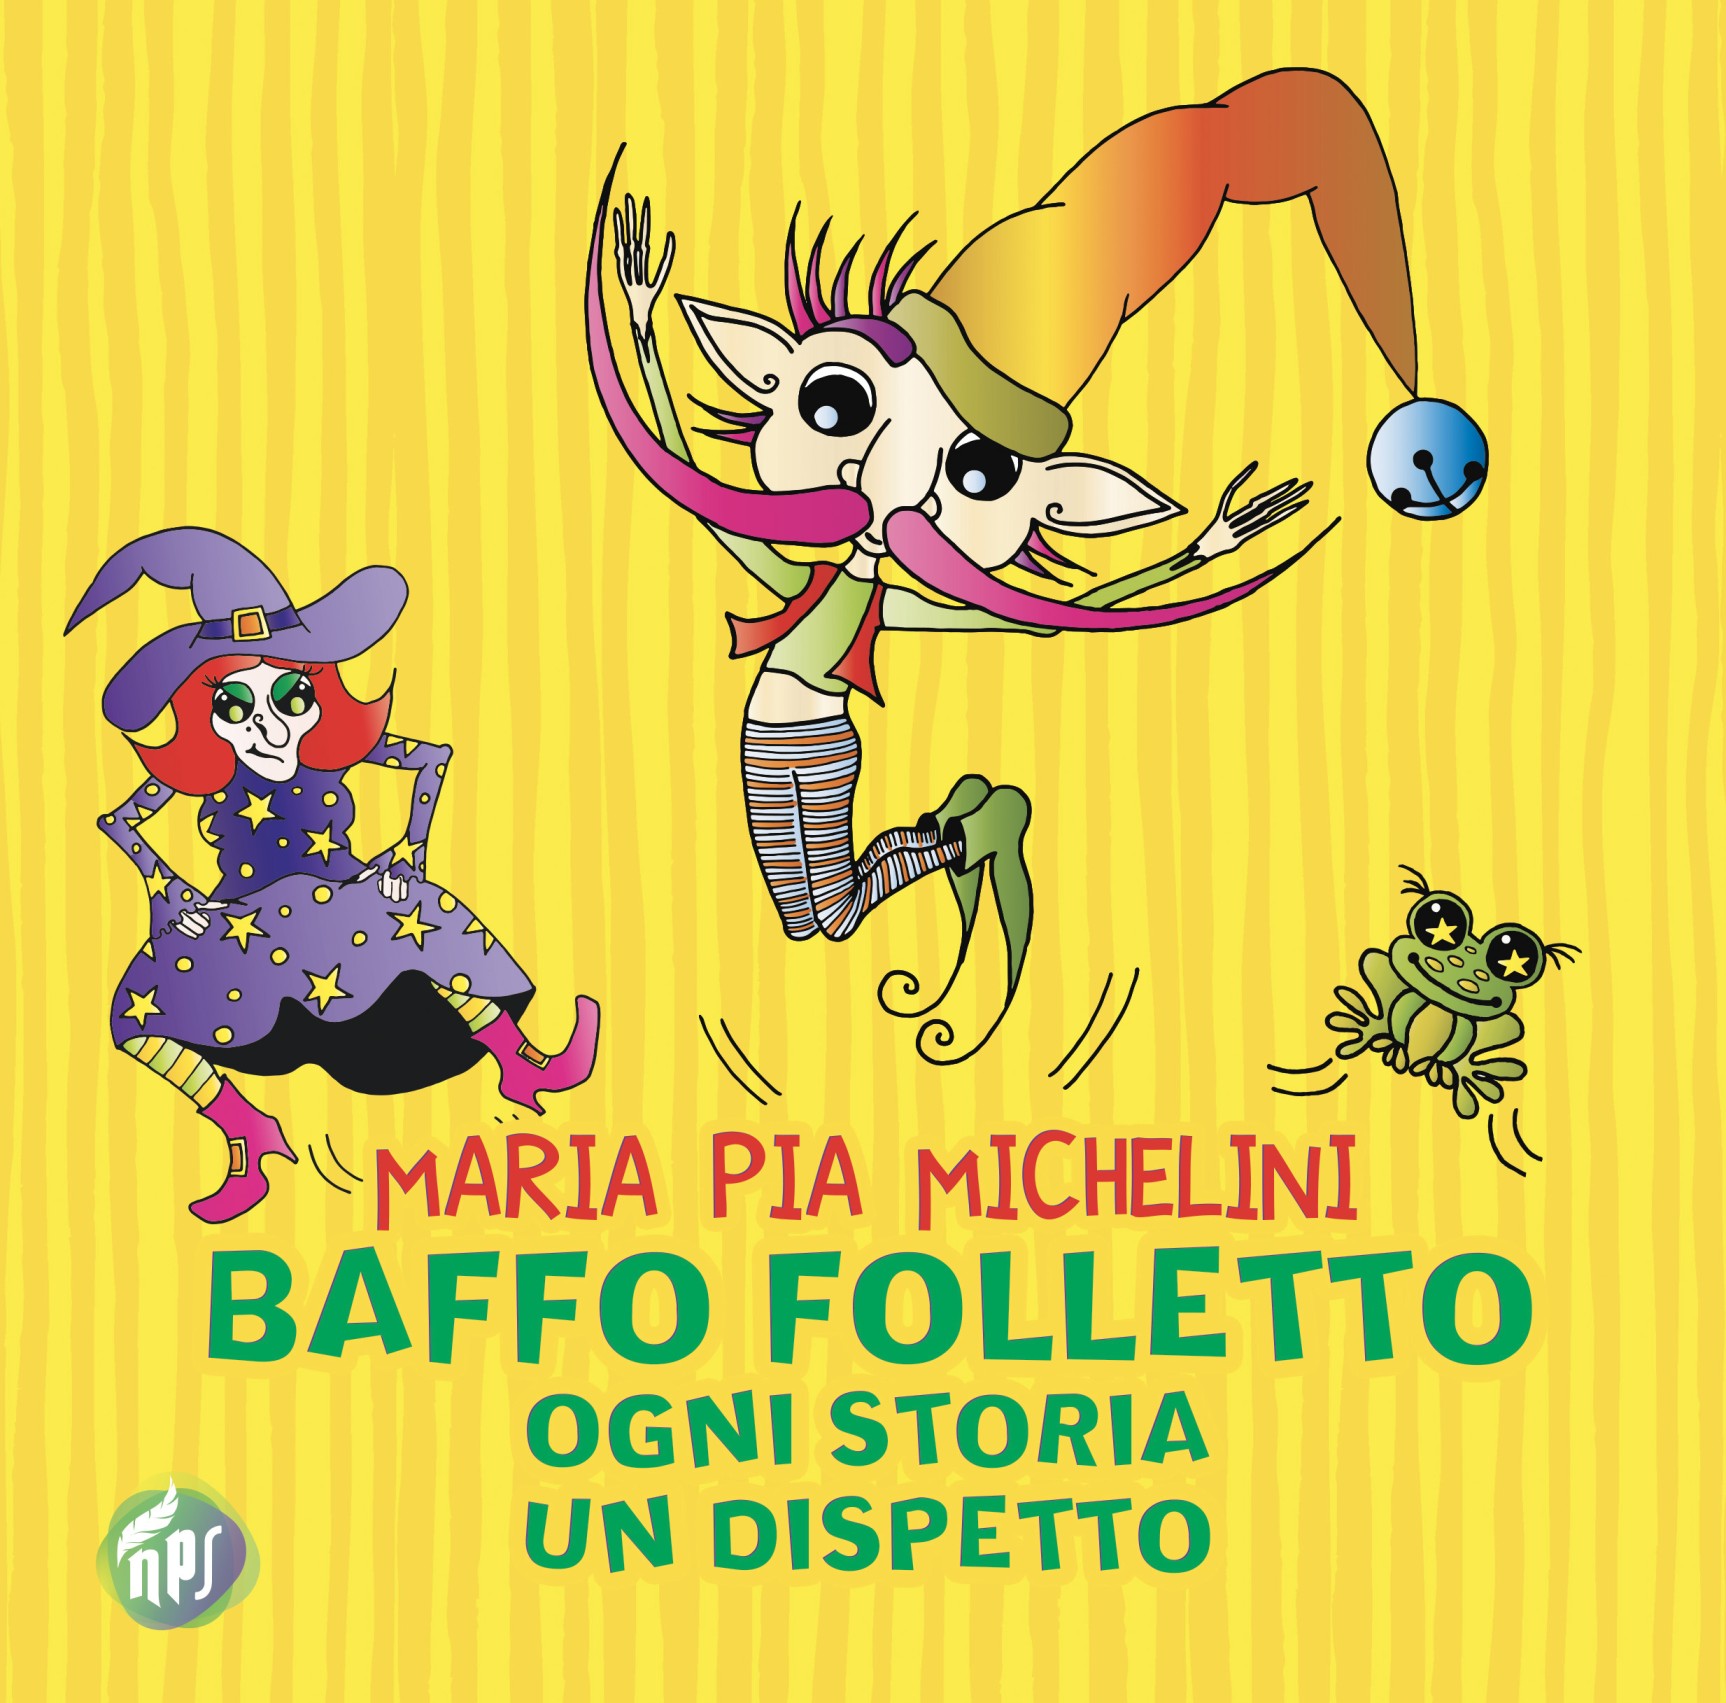 Arriva in libreria Baffo folletto di Maria Pia Michelini